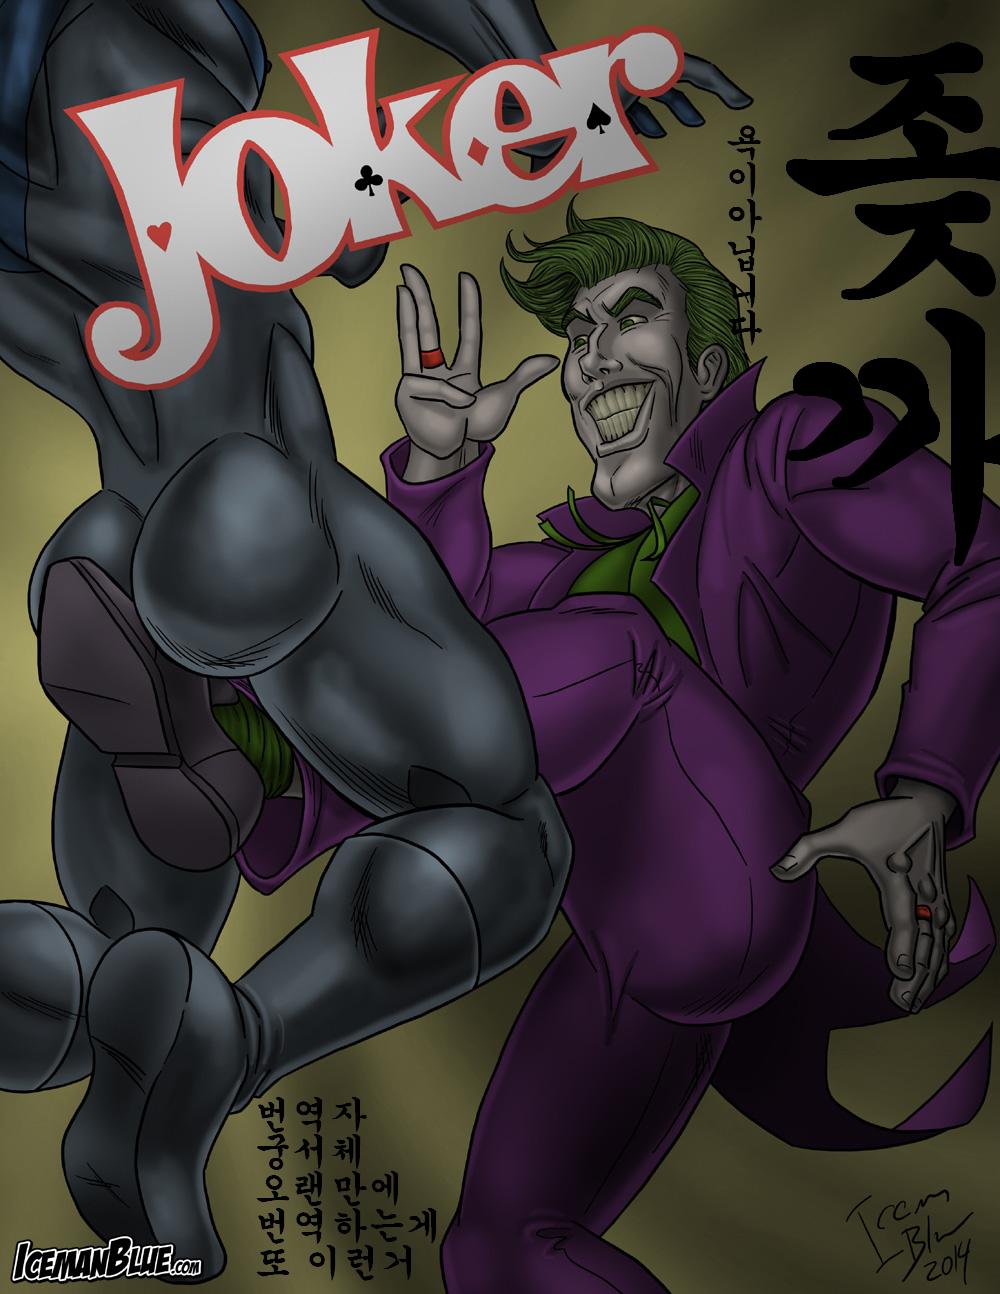 The Jokerkorea00